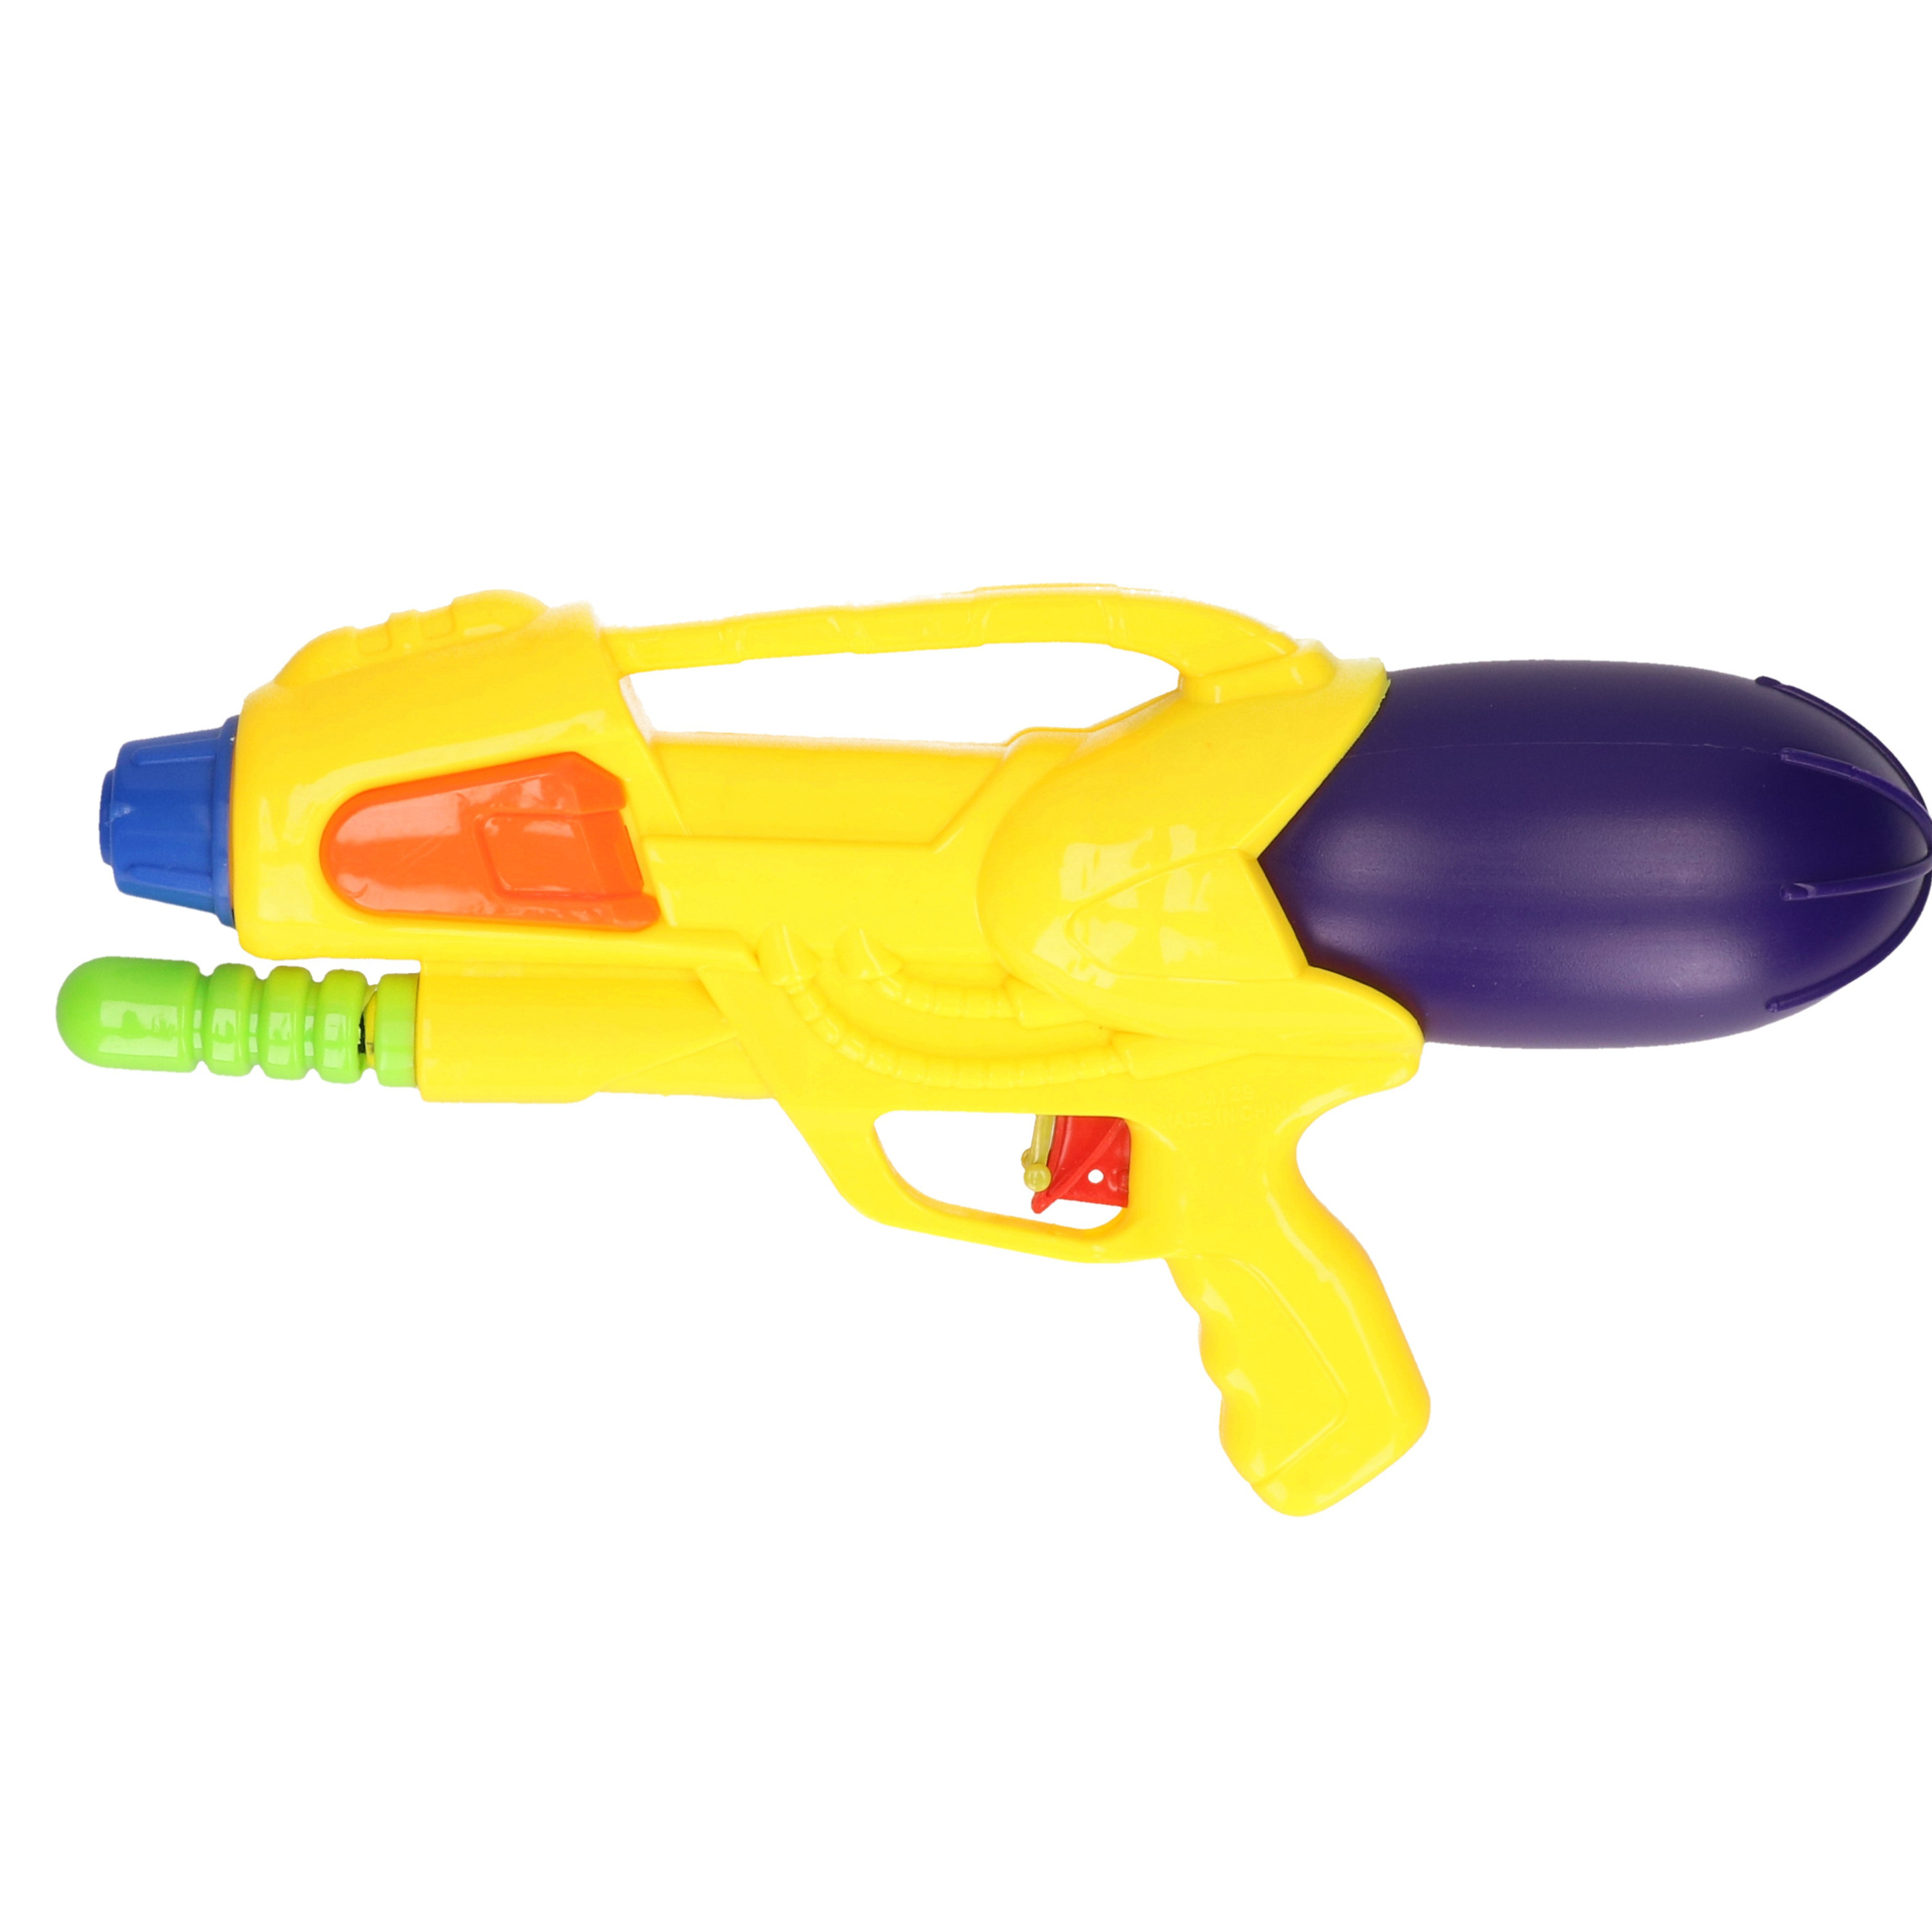 1x Waterpistolen/waterpistool geel van 30 cm kinderspeelgoed